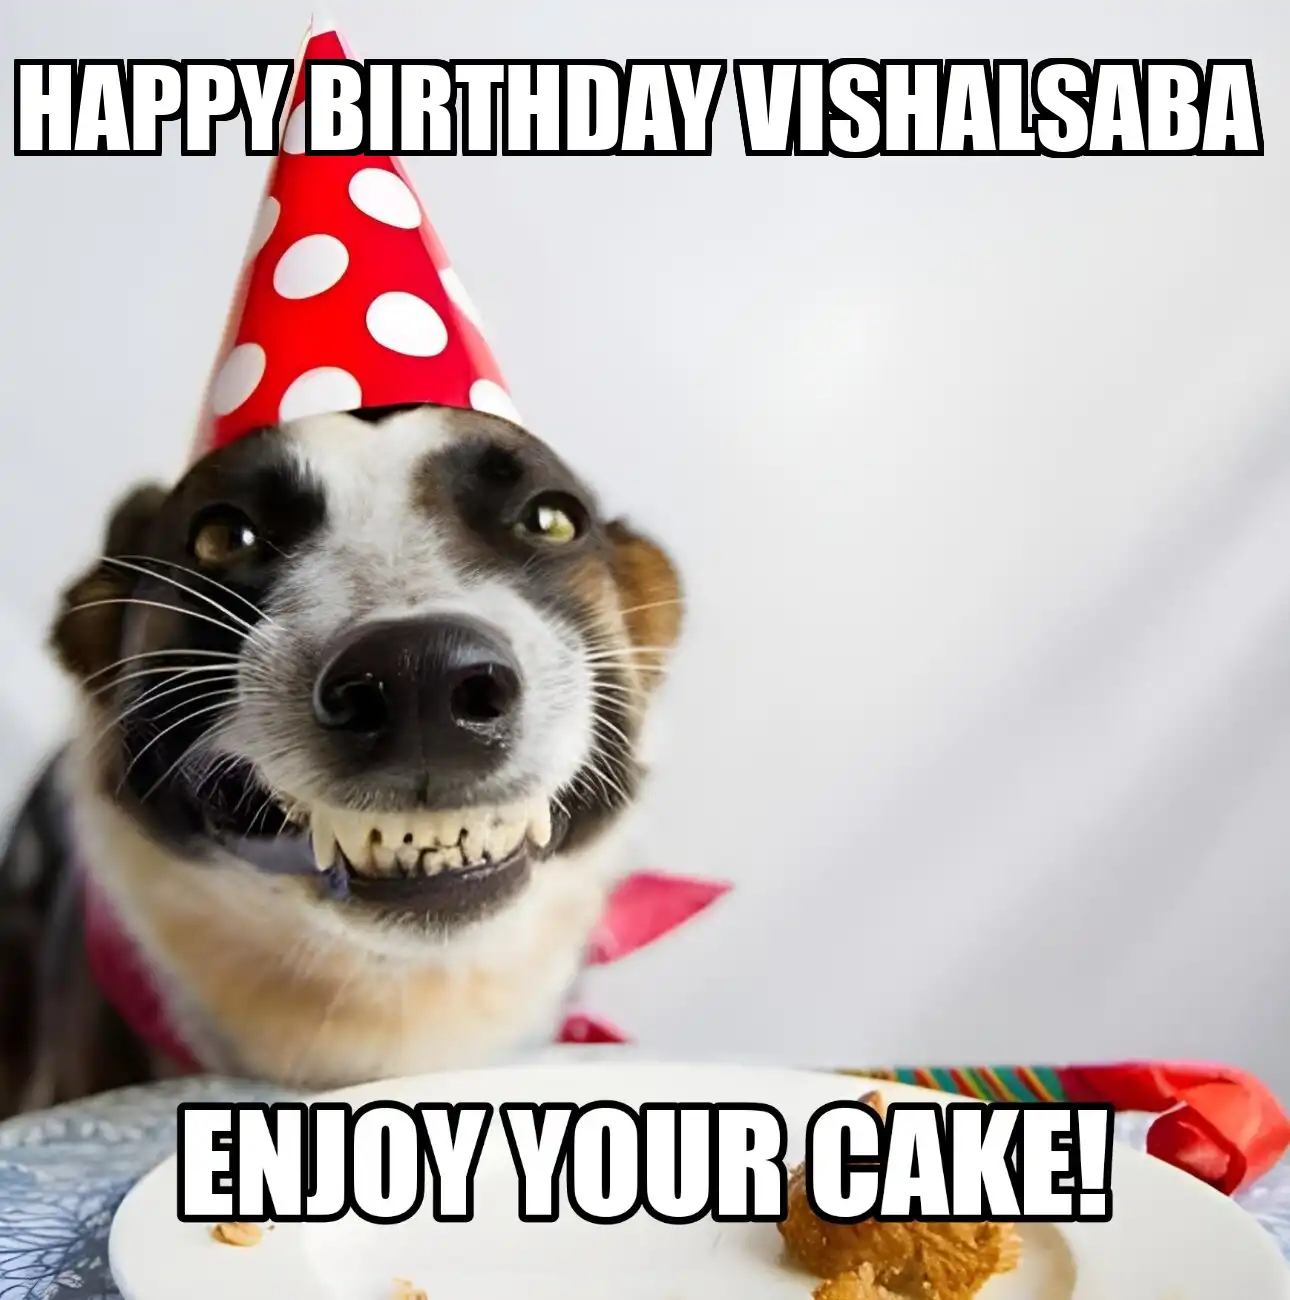 Happy Birthday Vishalsaba Enjoy Your Cake Dog Meme